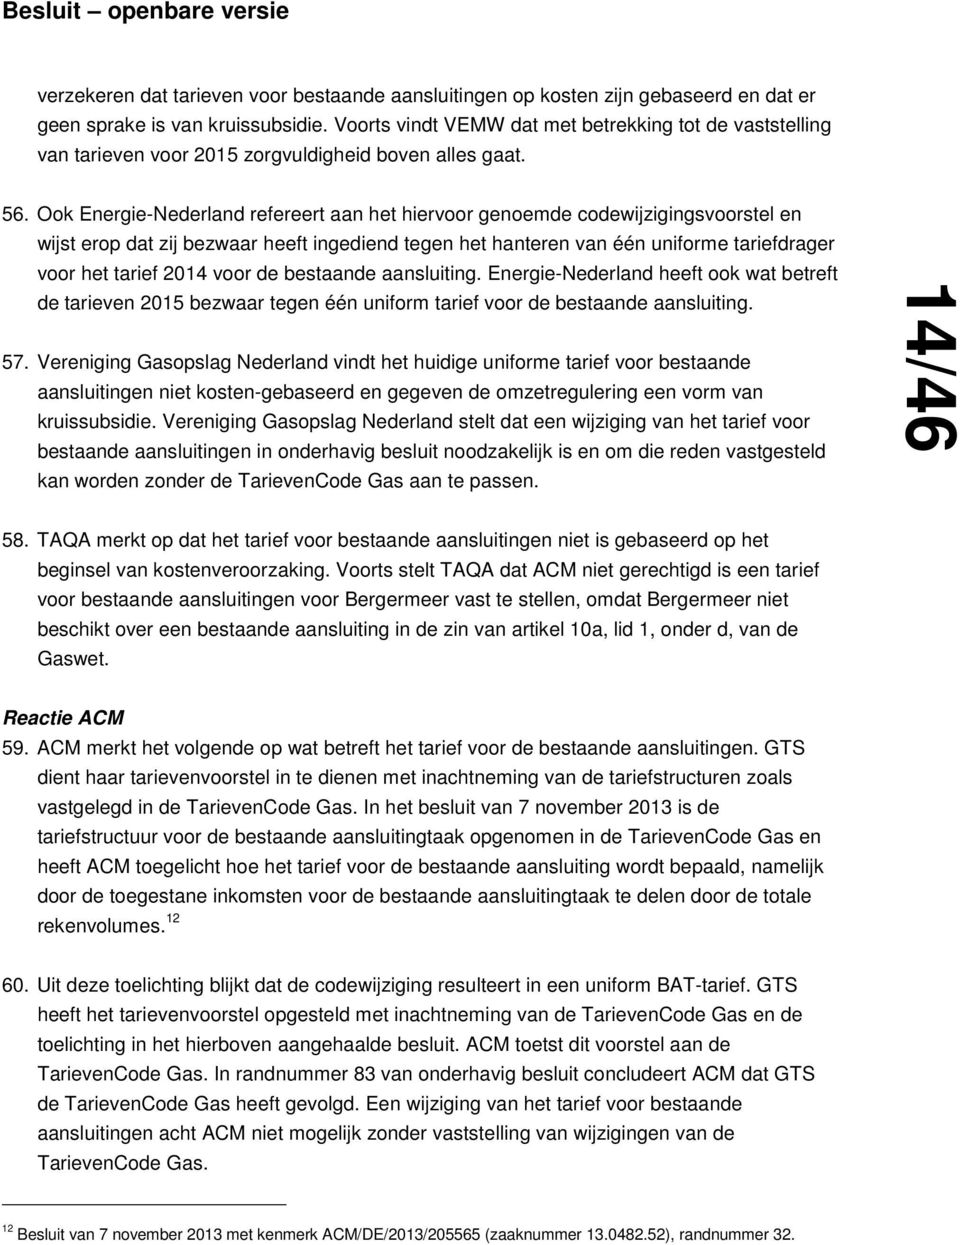 Ook Energie-Nederland refereert aan het hiervoor genoemde codewijzigingsvoorstel en wijst erop dat zij bezwaar heeft ingediend tegen het hanteren van één uniforme tariefdrager voor het tarief 2014